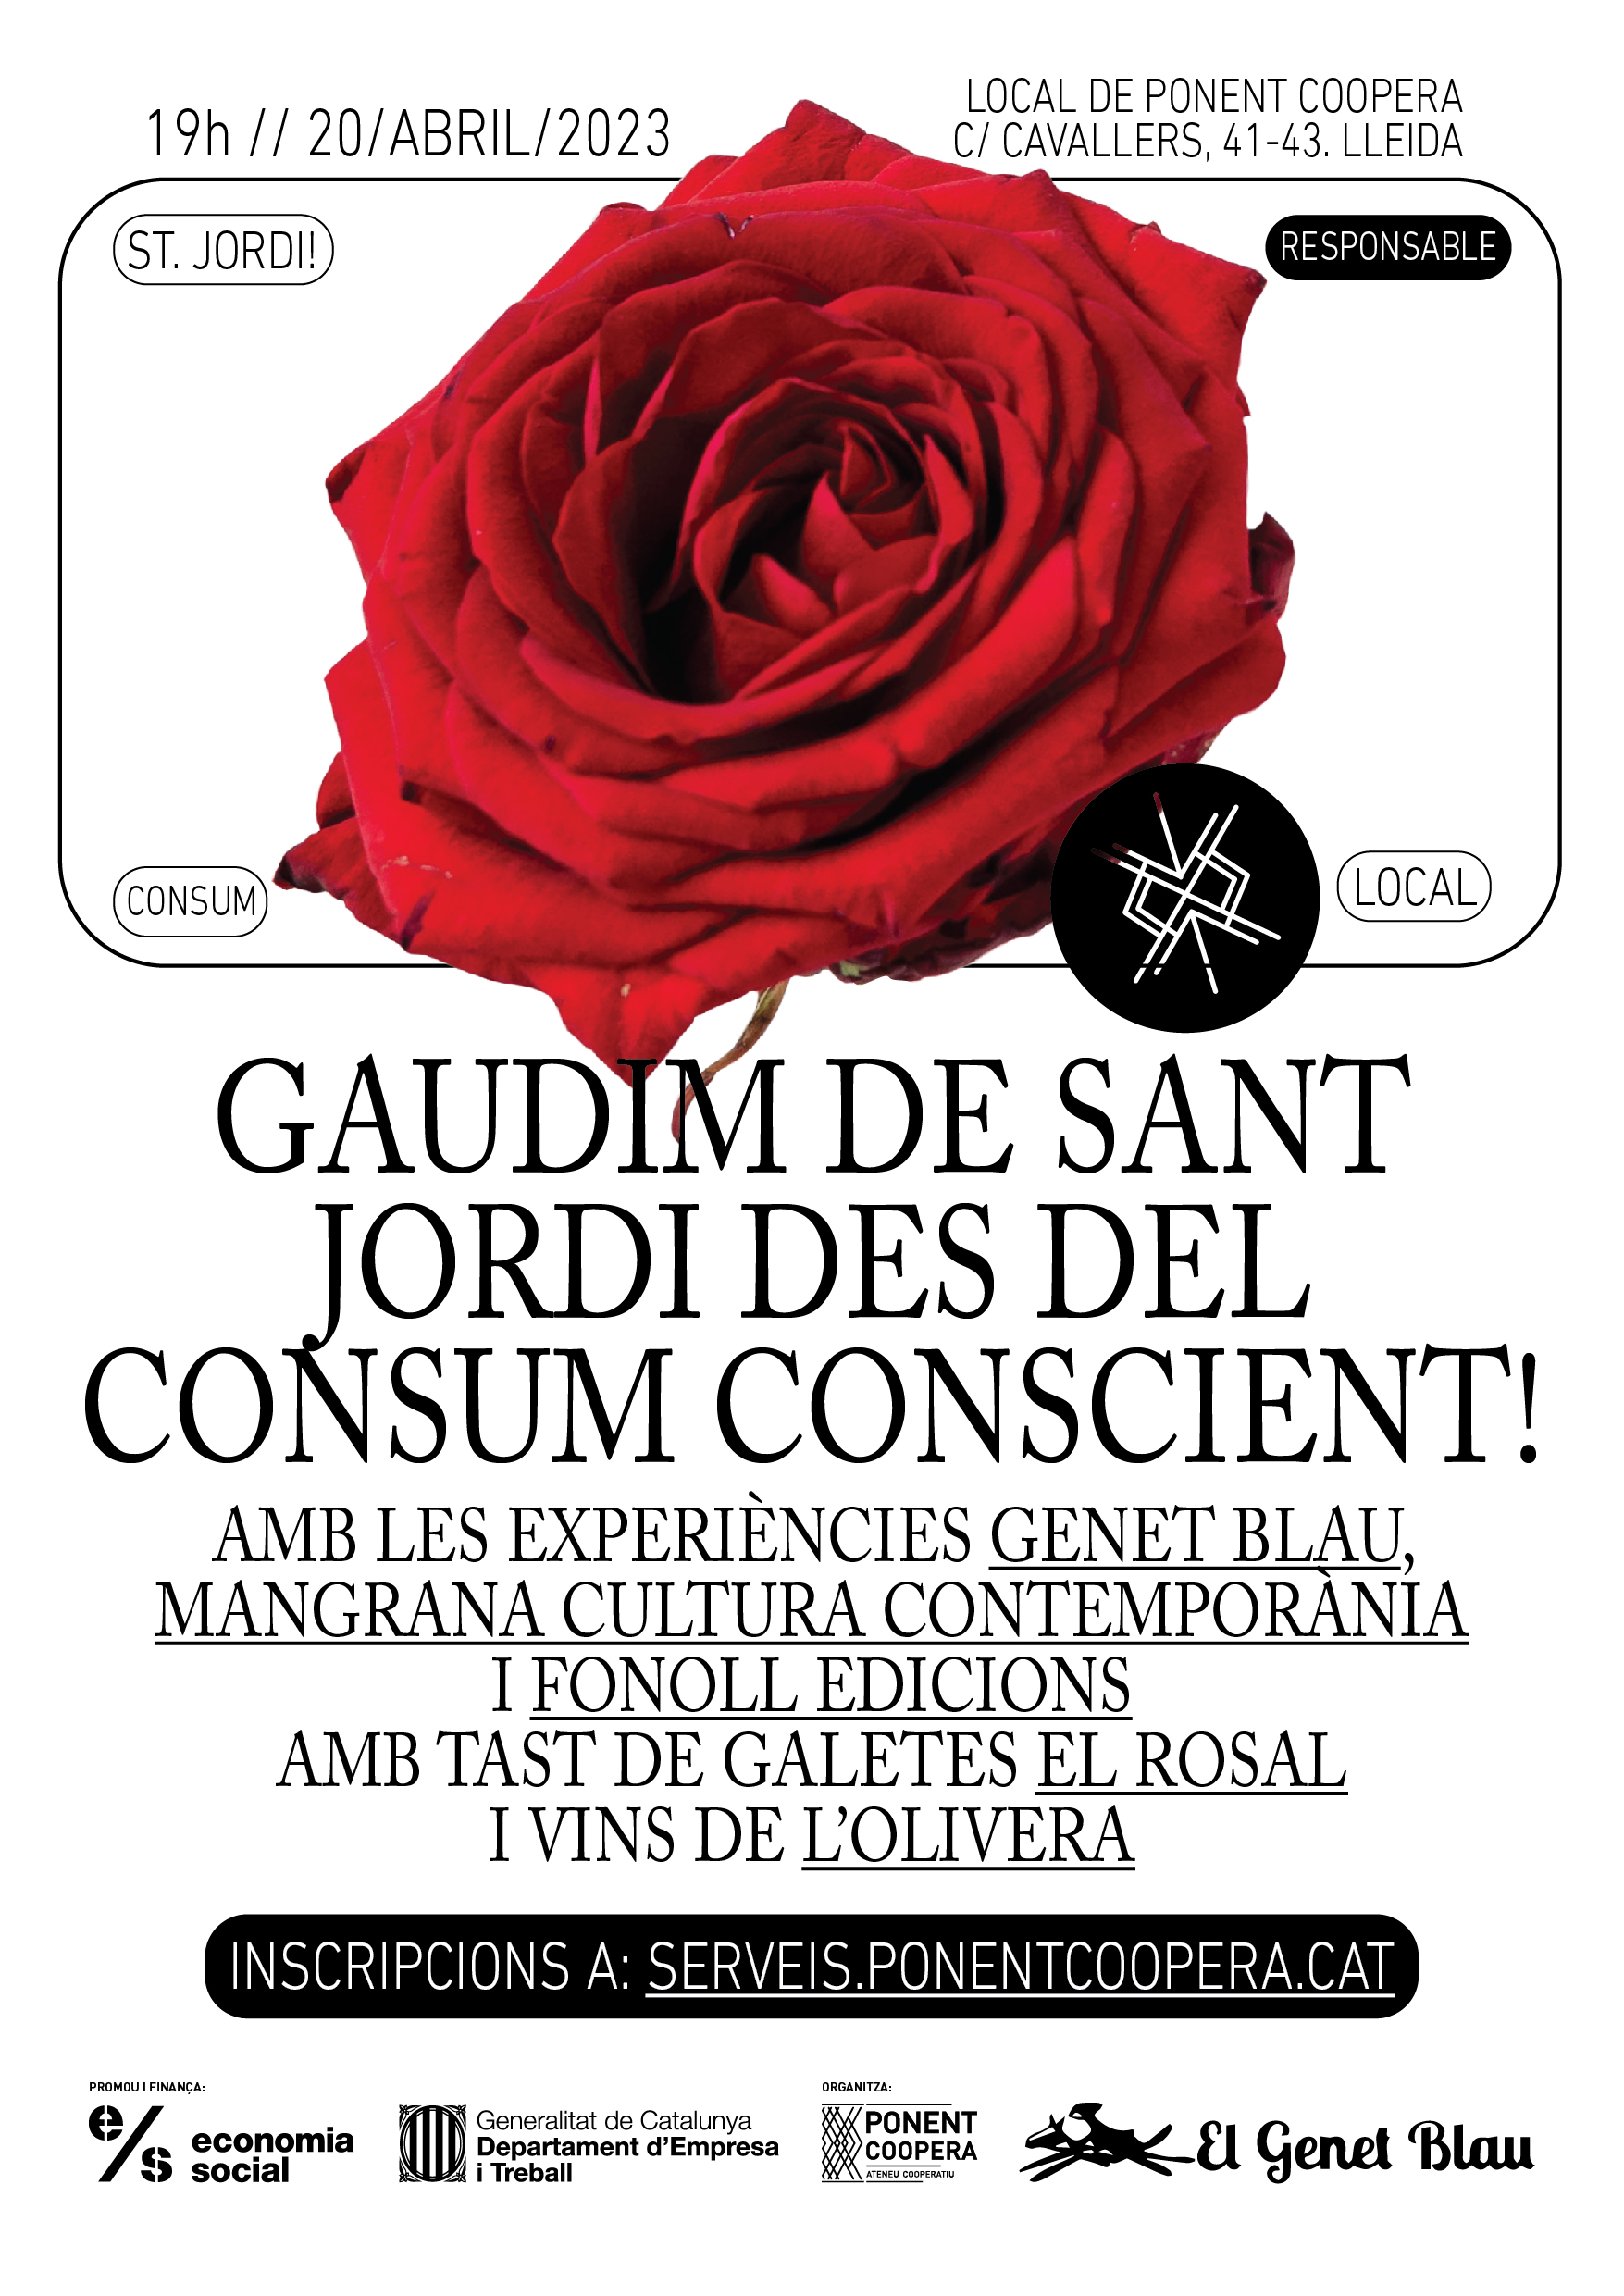 Gaudim de Sant Jordi des del consum conscient!